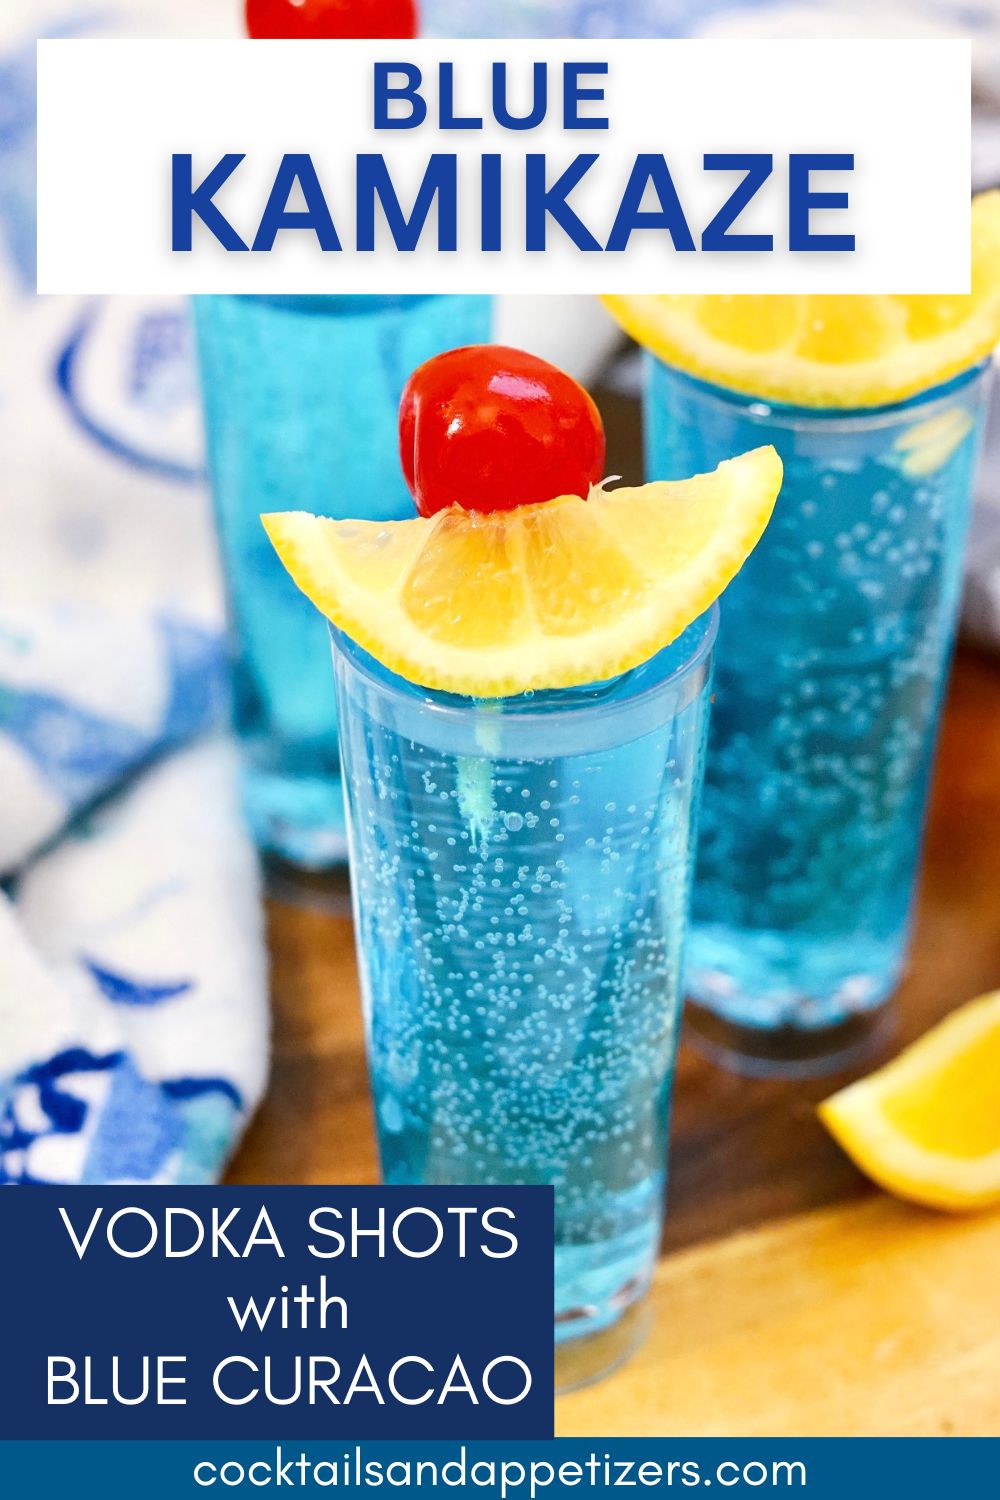 Blue Kamikaze vodka shots in shot glasses on a wood slab